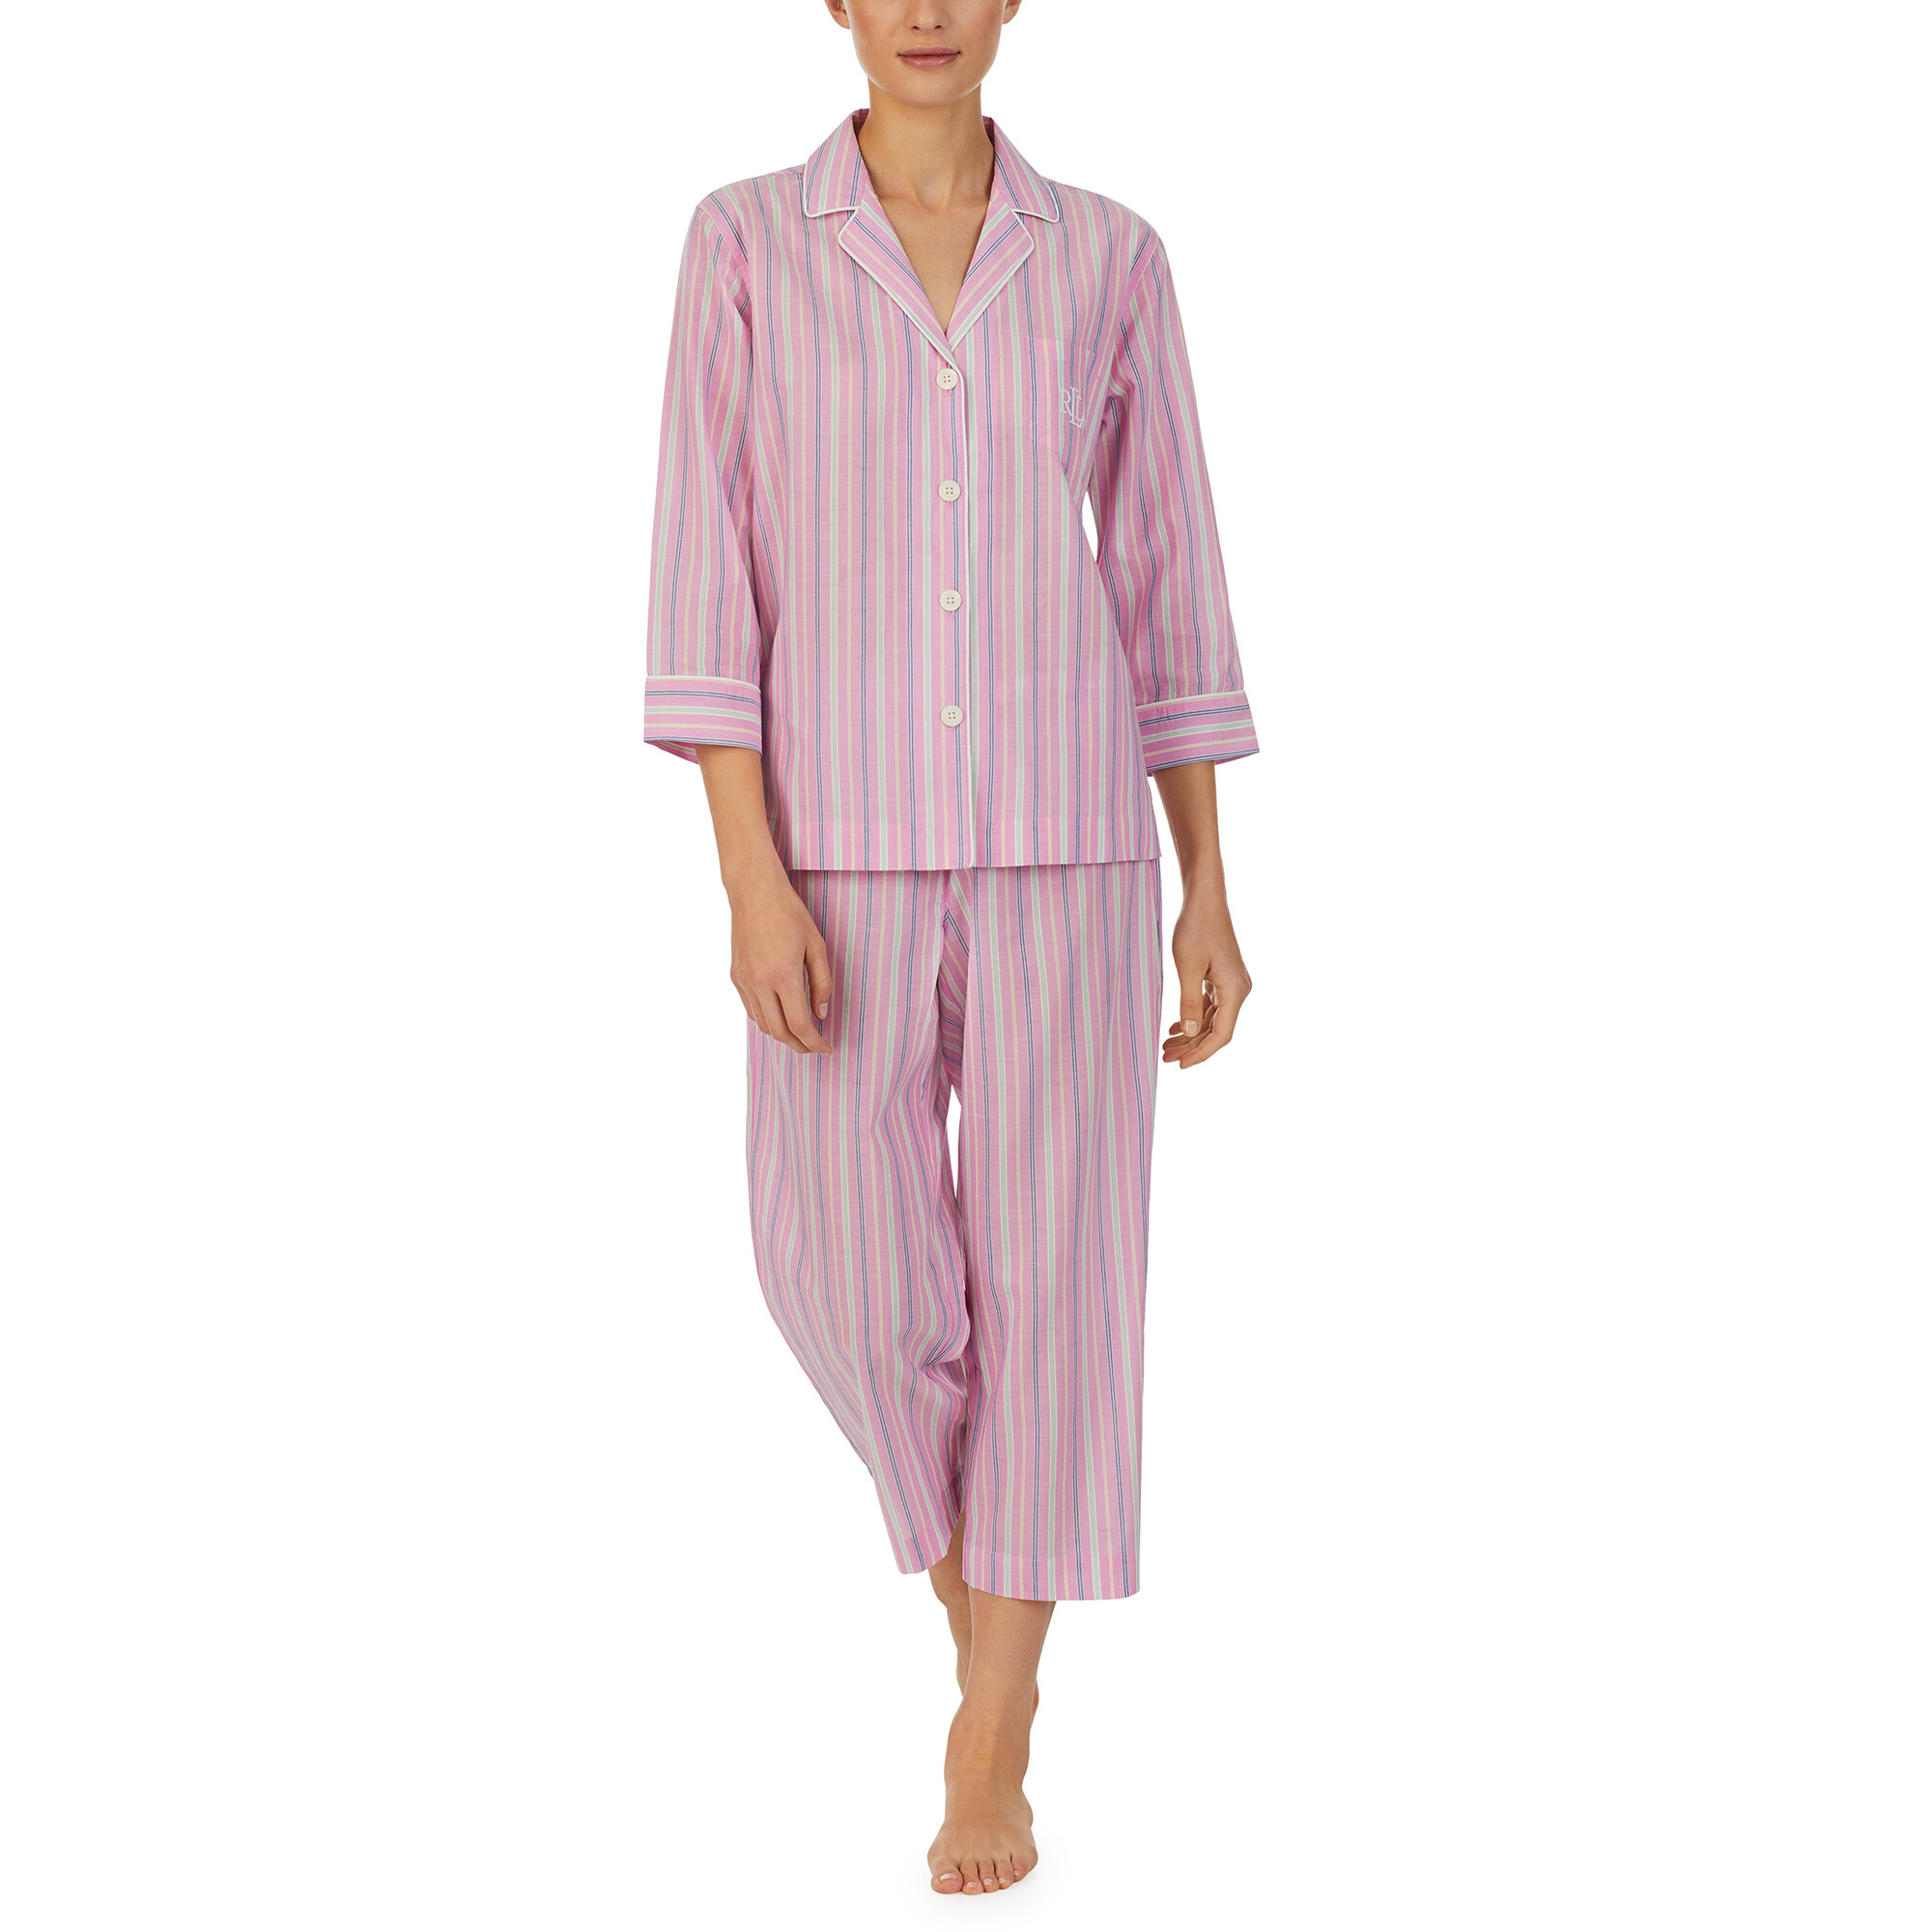 Imbracaminte Femei LAUREN Ralph Lauren 34 Sleeve Notch Collar Capris PJ Set Pink Stripe